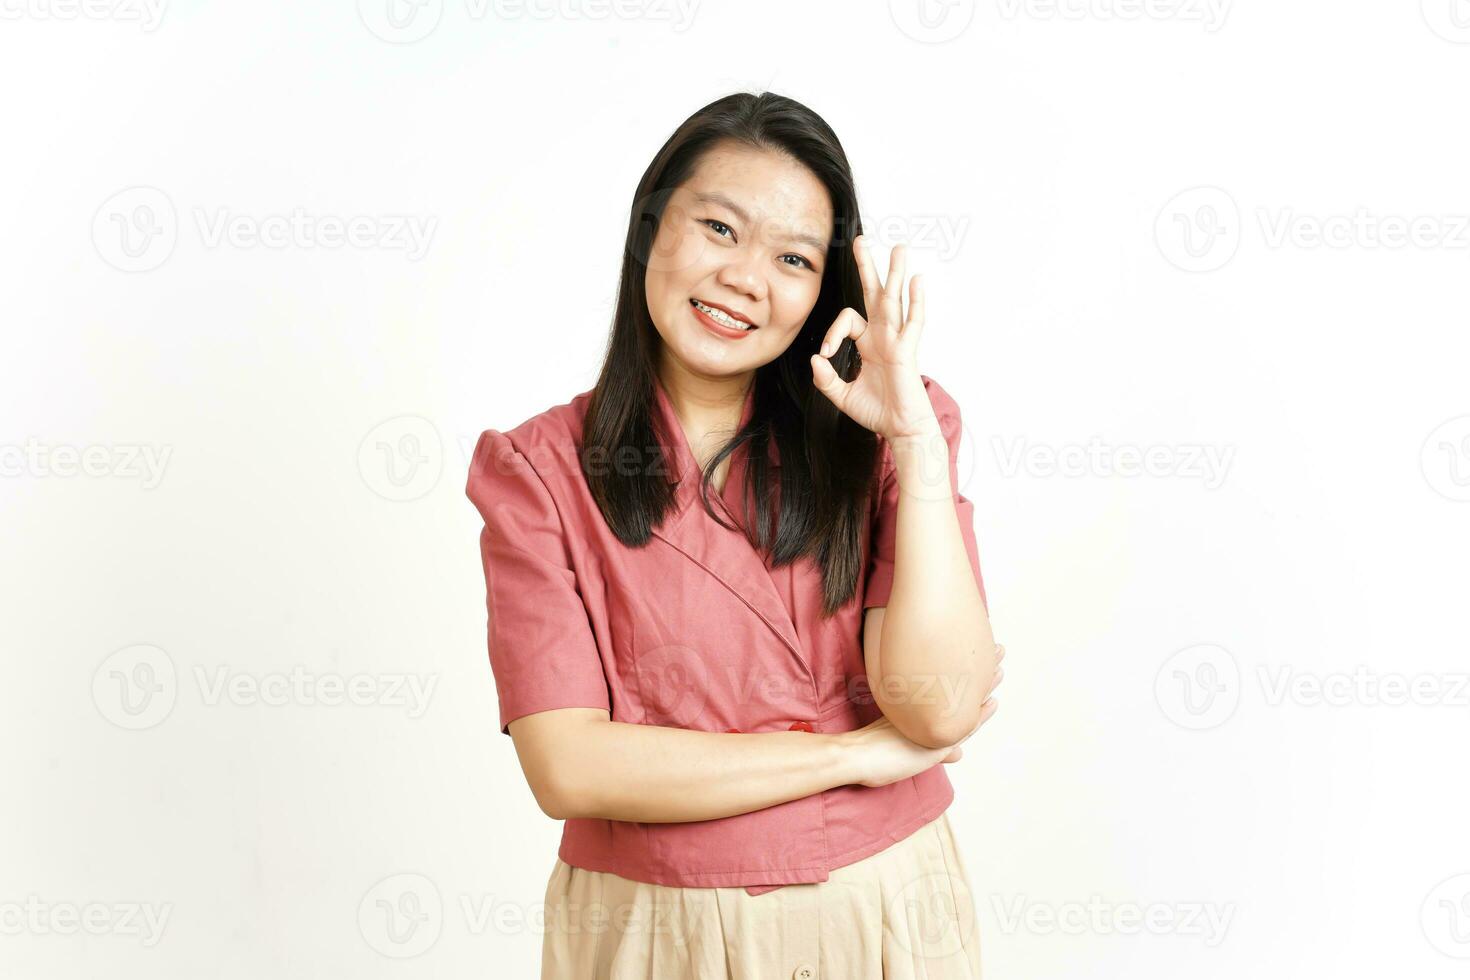 montrant D'accord approuvé signe de magnifique asiatique femme isolé sur blanc Contexte photo